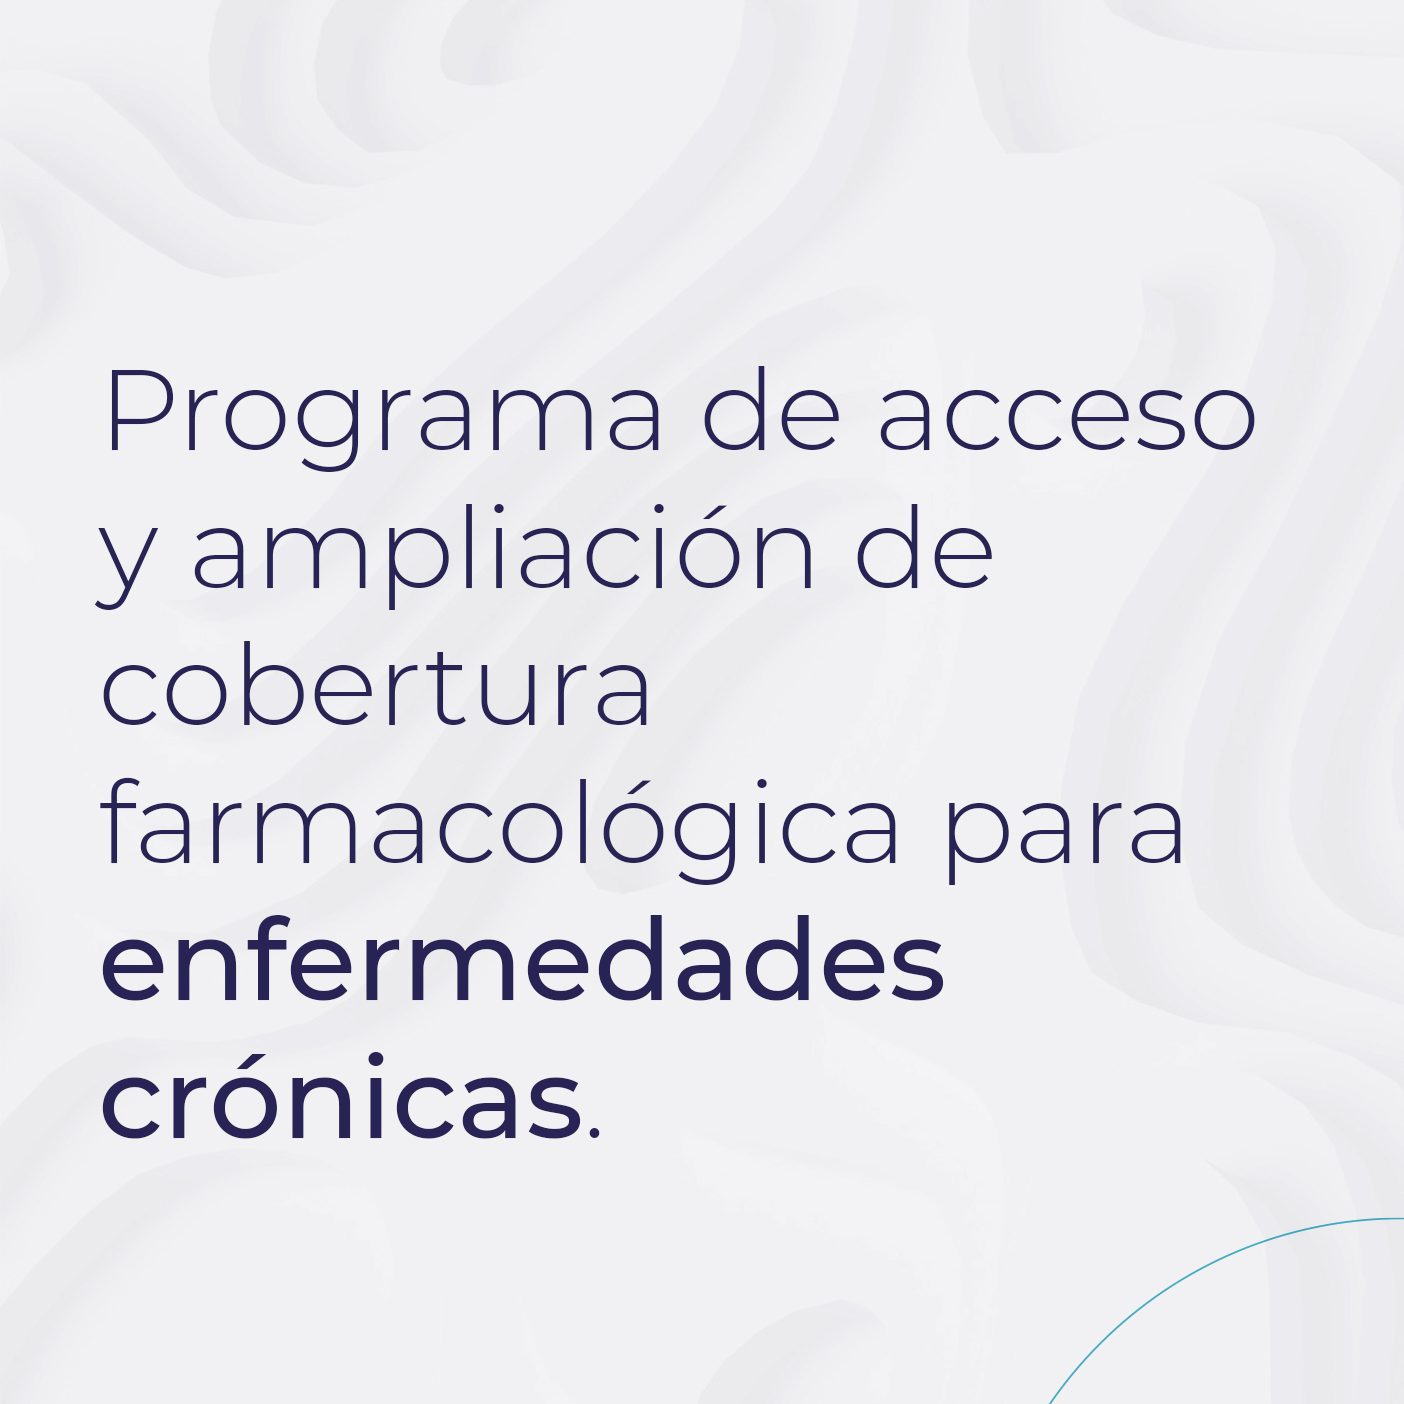 Programa de acceso y ampliación de cobertura farmacológica para enfermedades crónicas